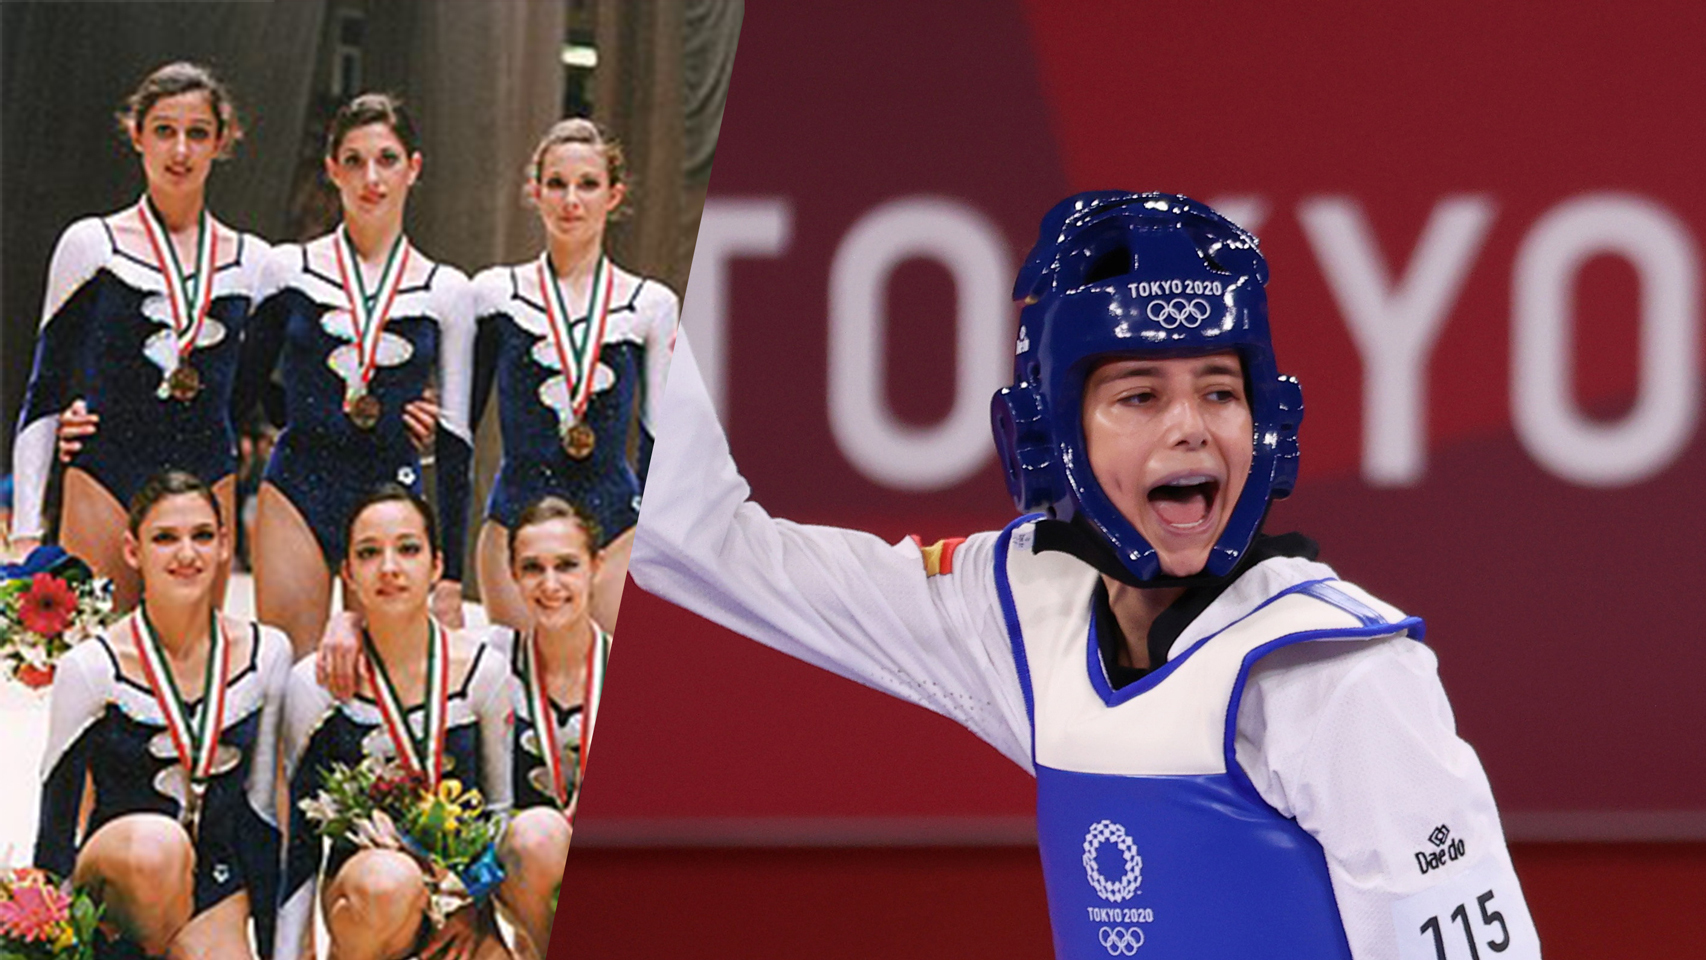 De Lorena Guréndez a Adriana Cerezo: los diez medallistas olímpicos españoles más jóvenes de la historia